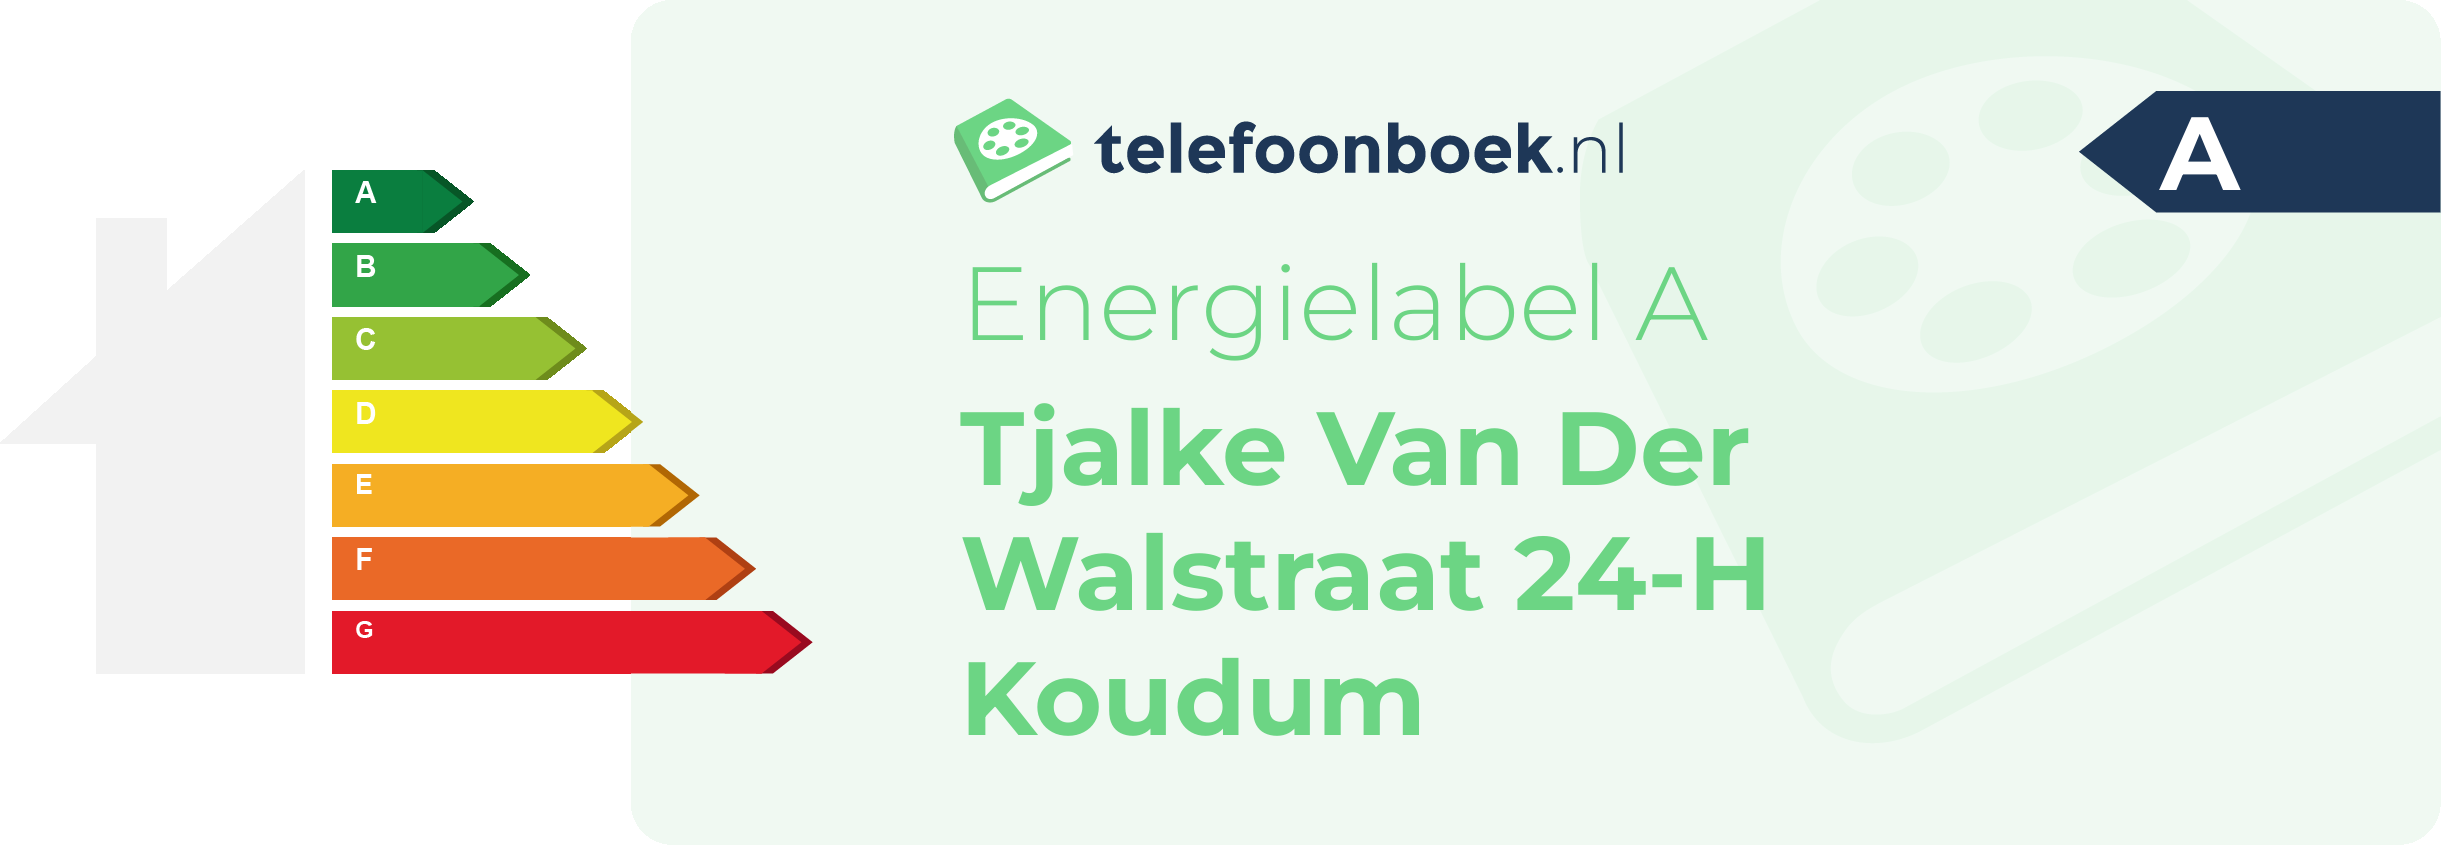 Energielabel Tjalke Van Der Walstraat 24-H Koudum